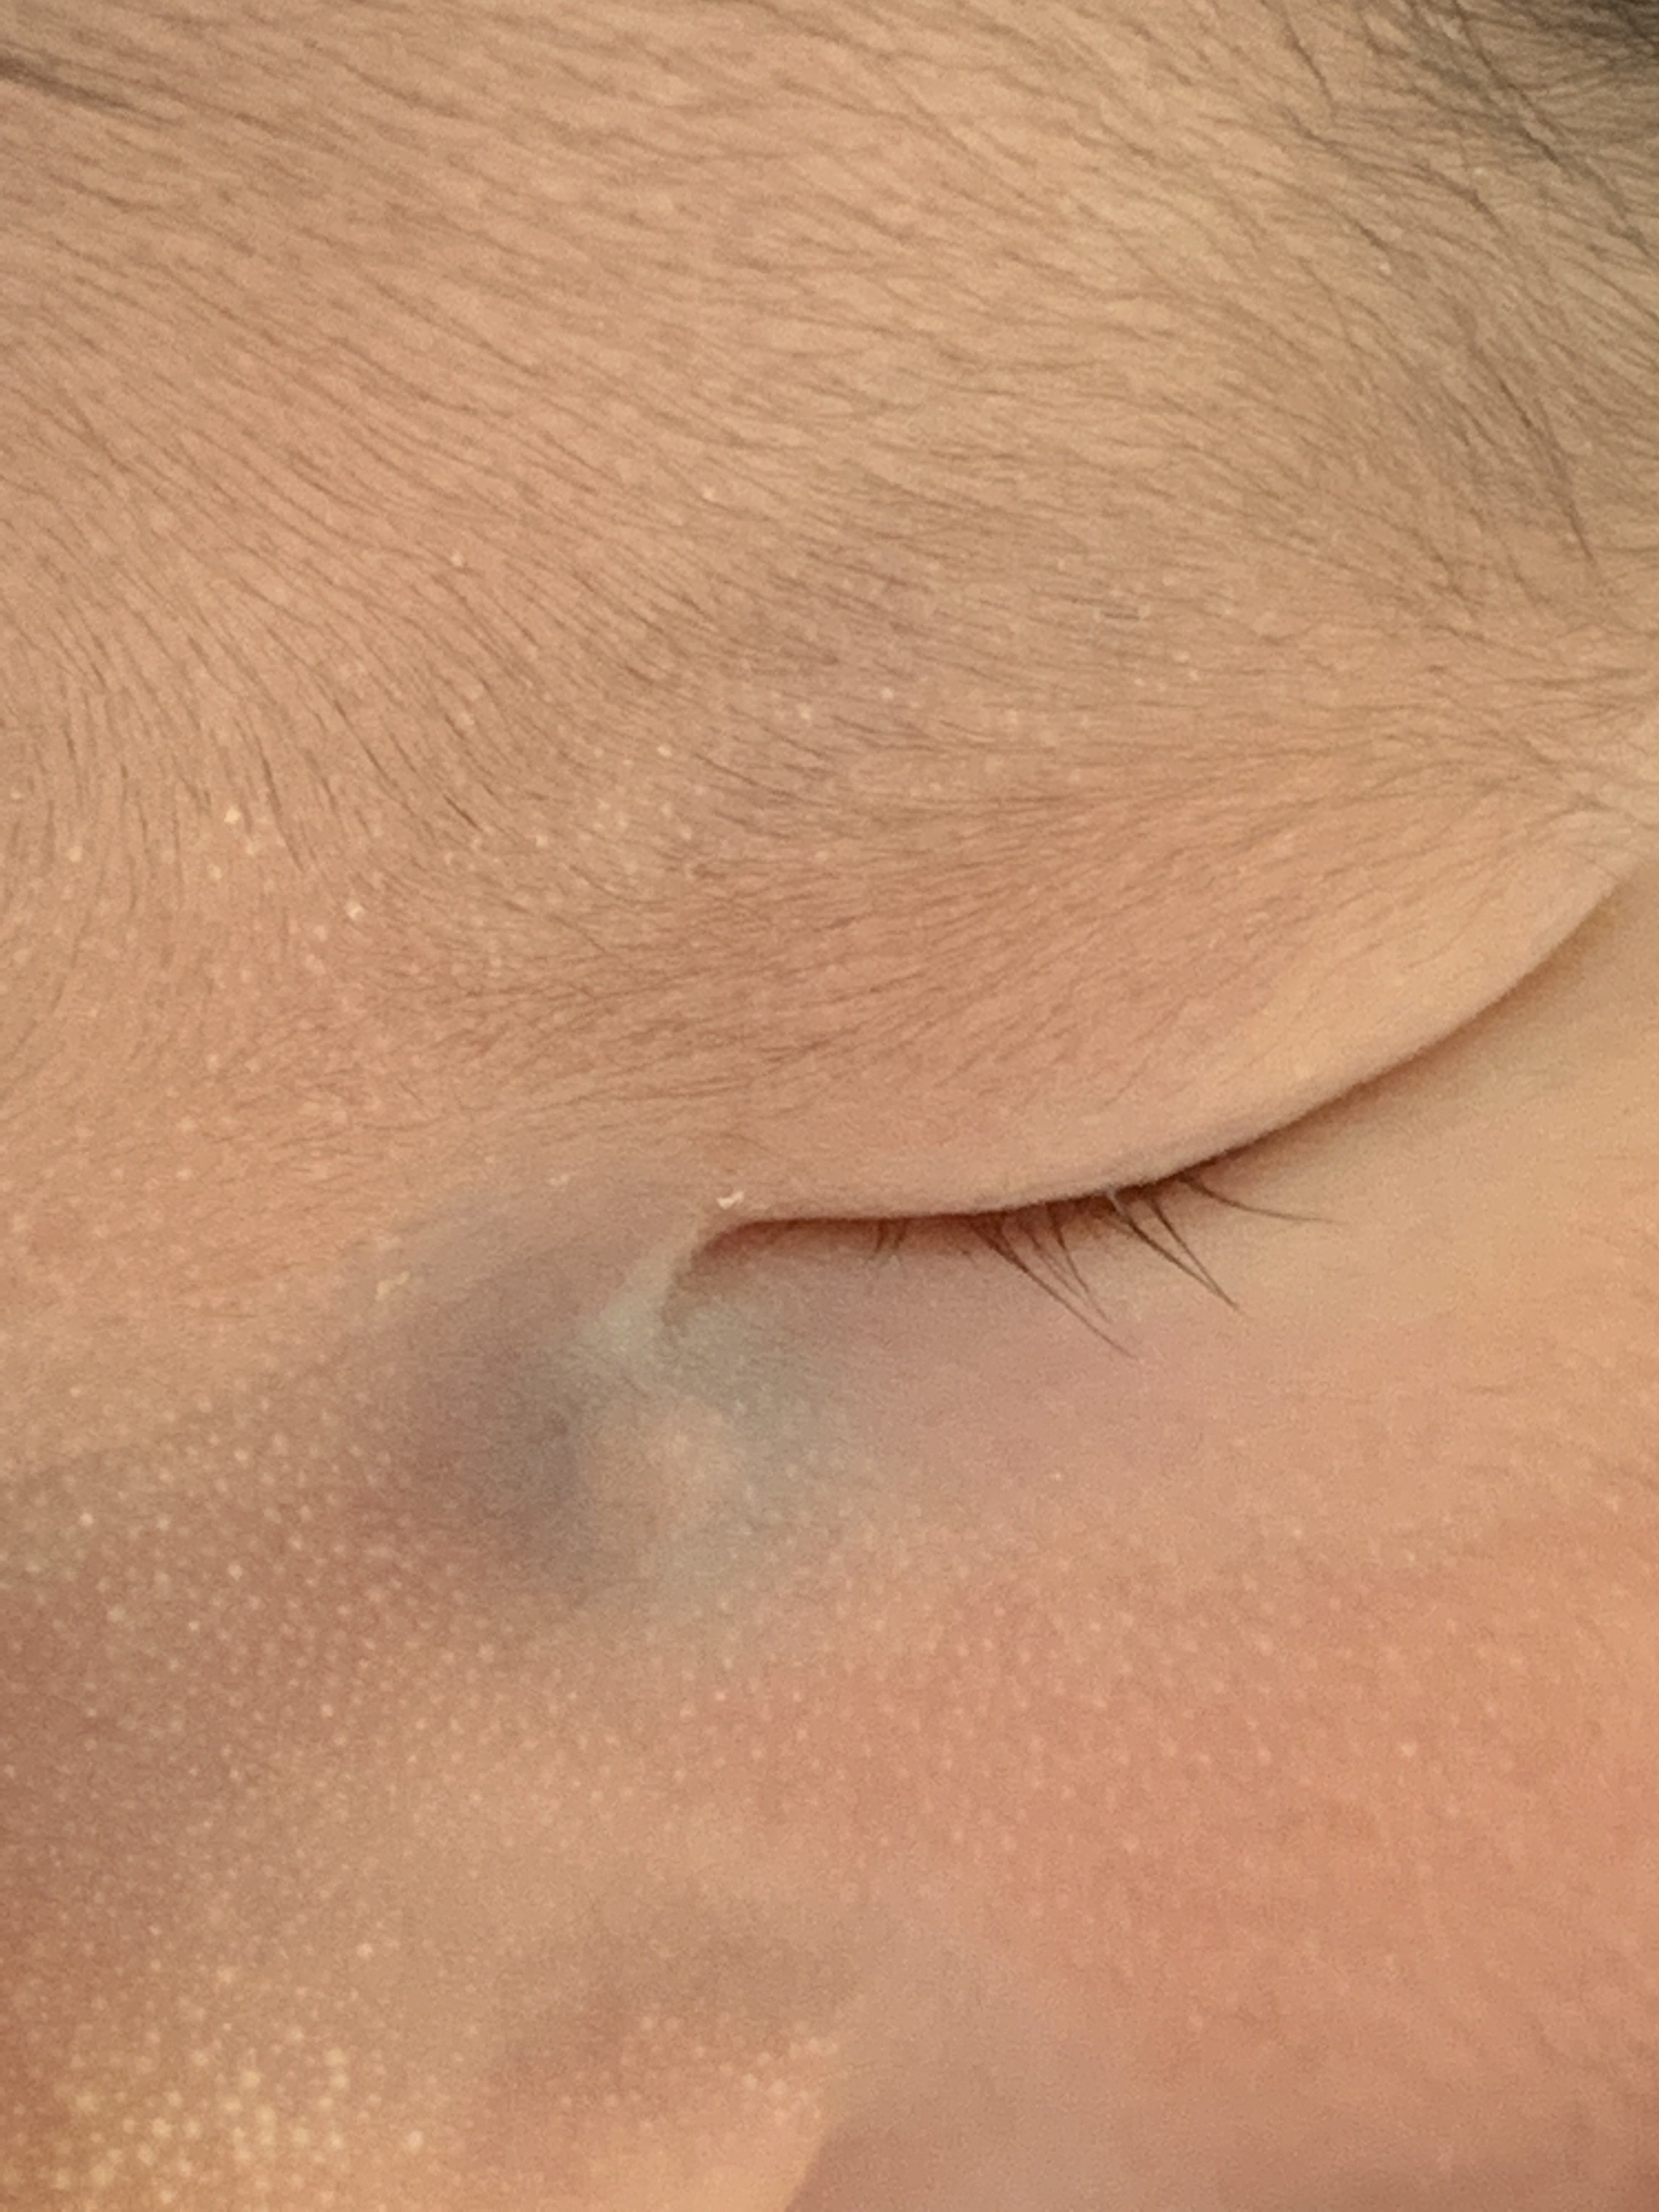 出生后内眦部暗紫色囊肿轻按后局部皮肤受刺激发红积液从泪小点溢出